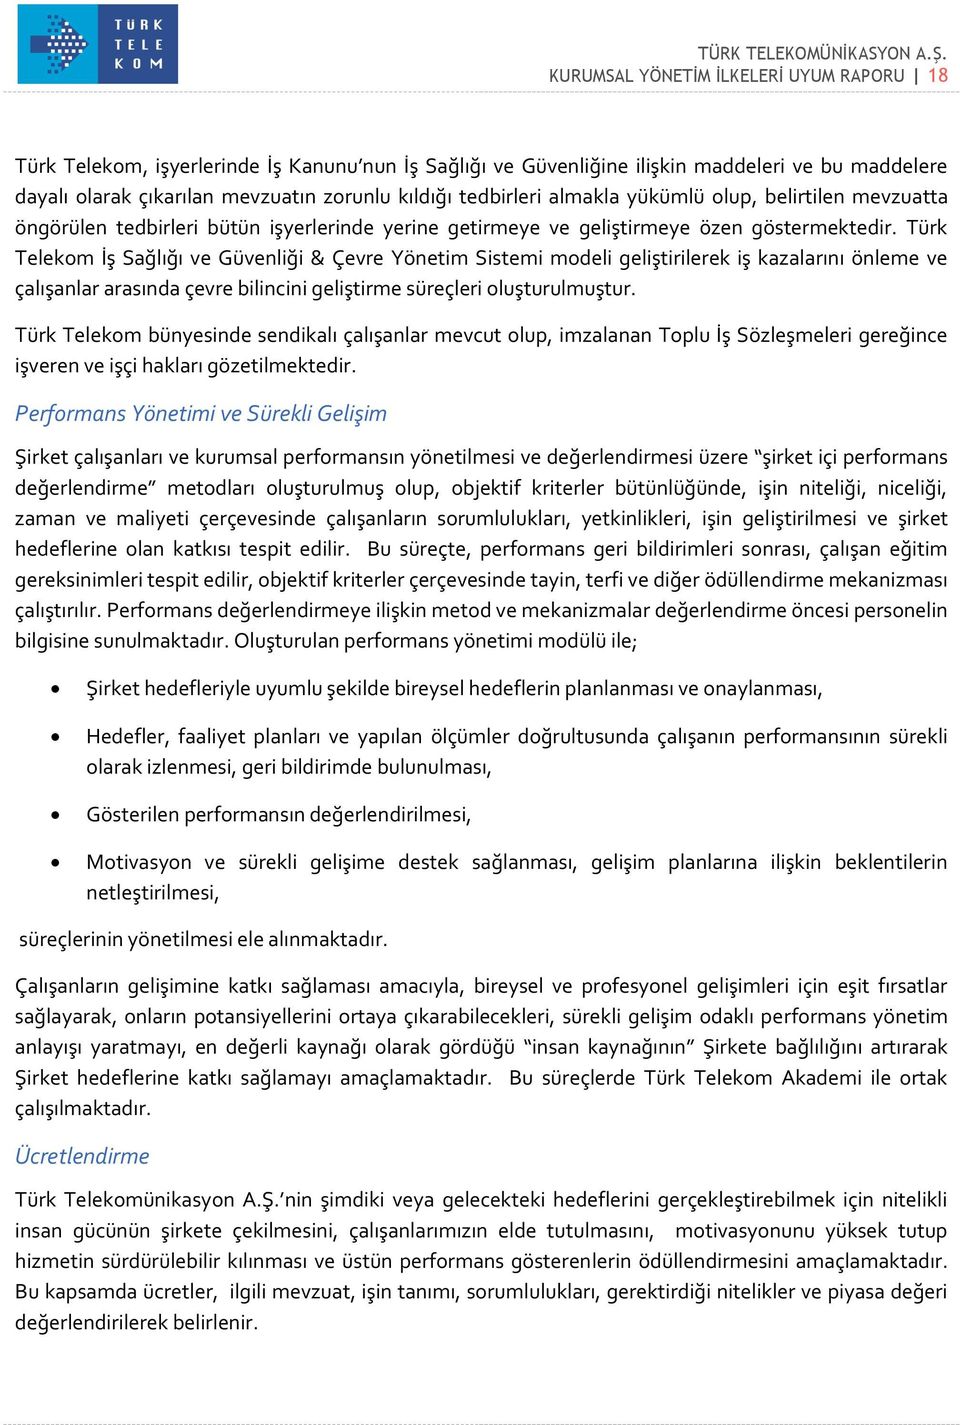 Türk Telekom İş Sağlığı ve Güvenliği & Çevre Yönetim Sistemi modeli geliştirilerek iş kazalarını önleme ve çalışanlar arasında çevre bilincini geliştirme süreçleri oluşturulmuştur.